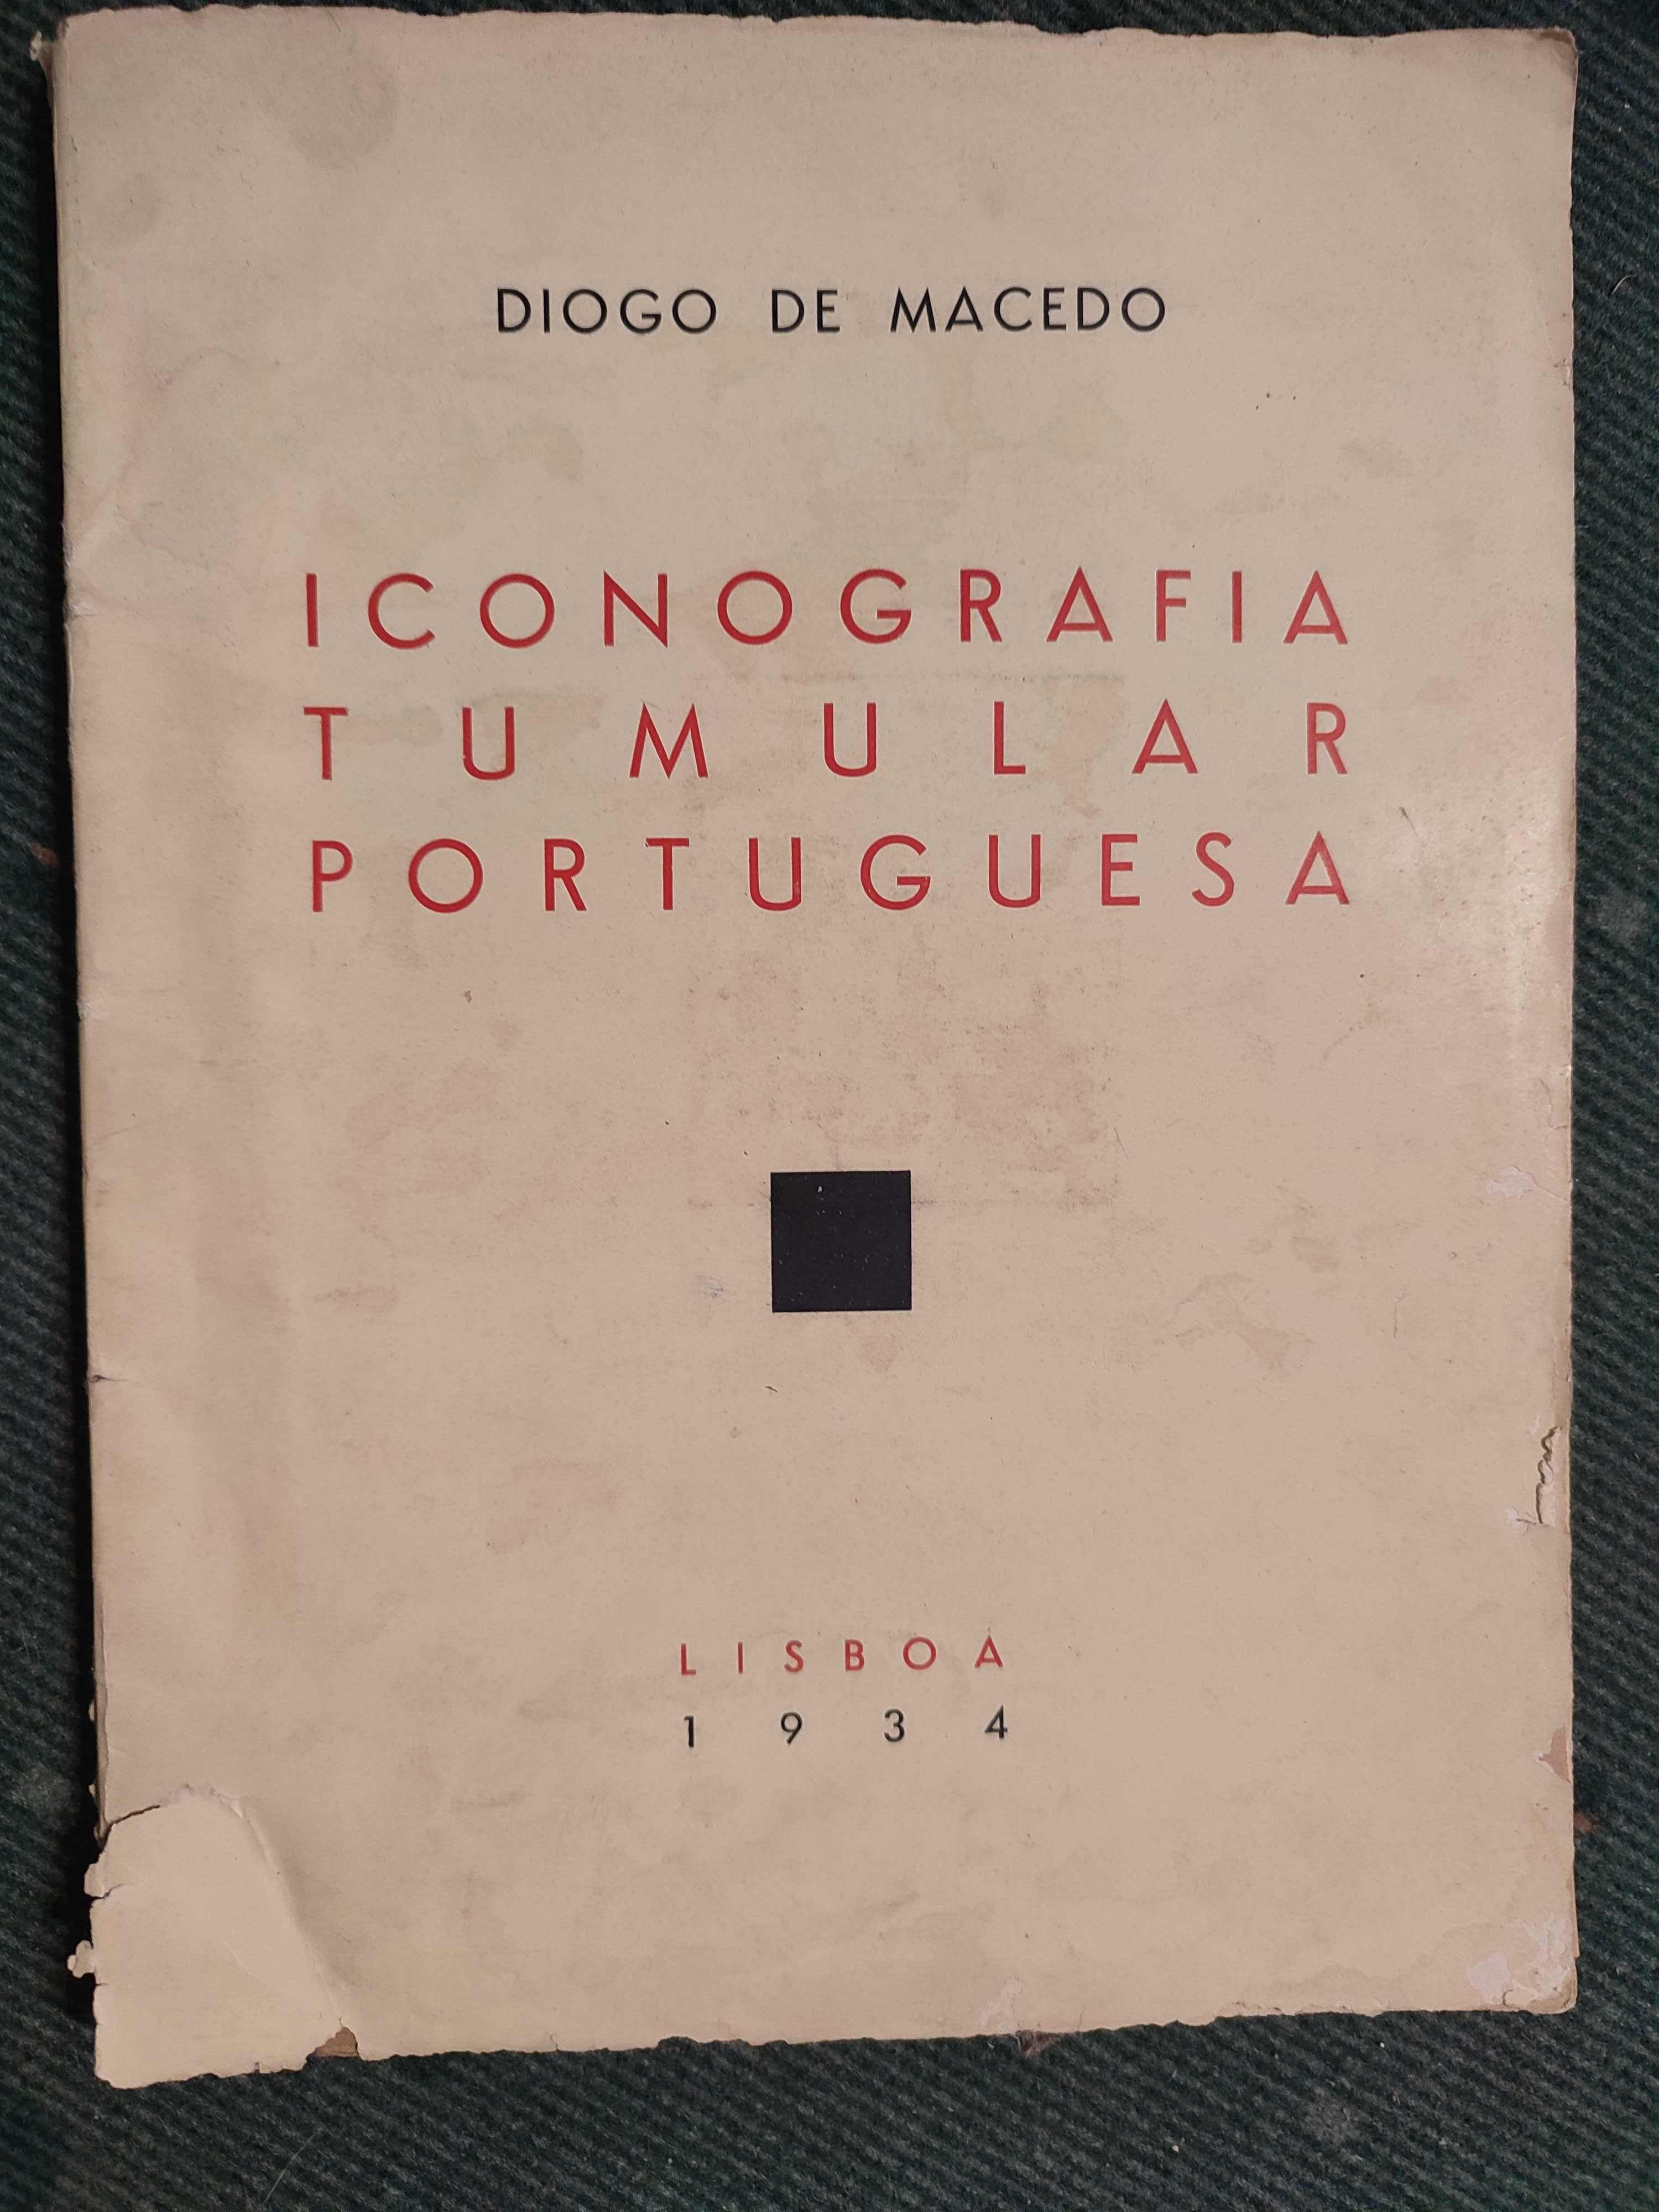 Iconografia Tumular Portuguesa - Diogo de Macedo - 1934